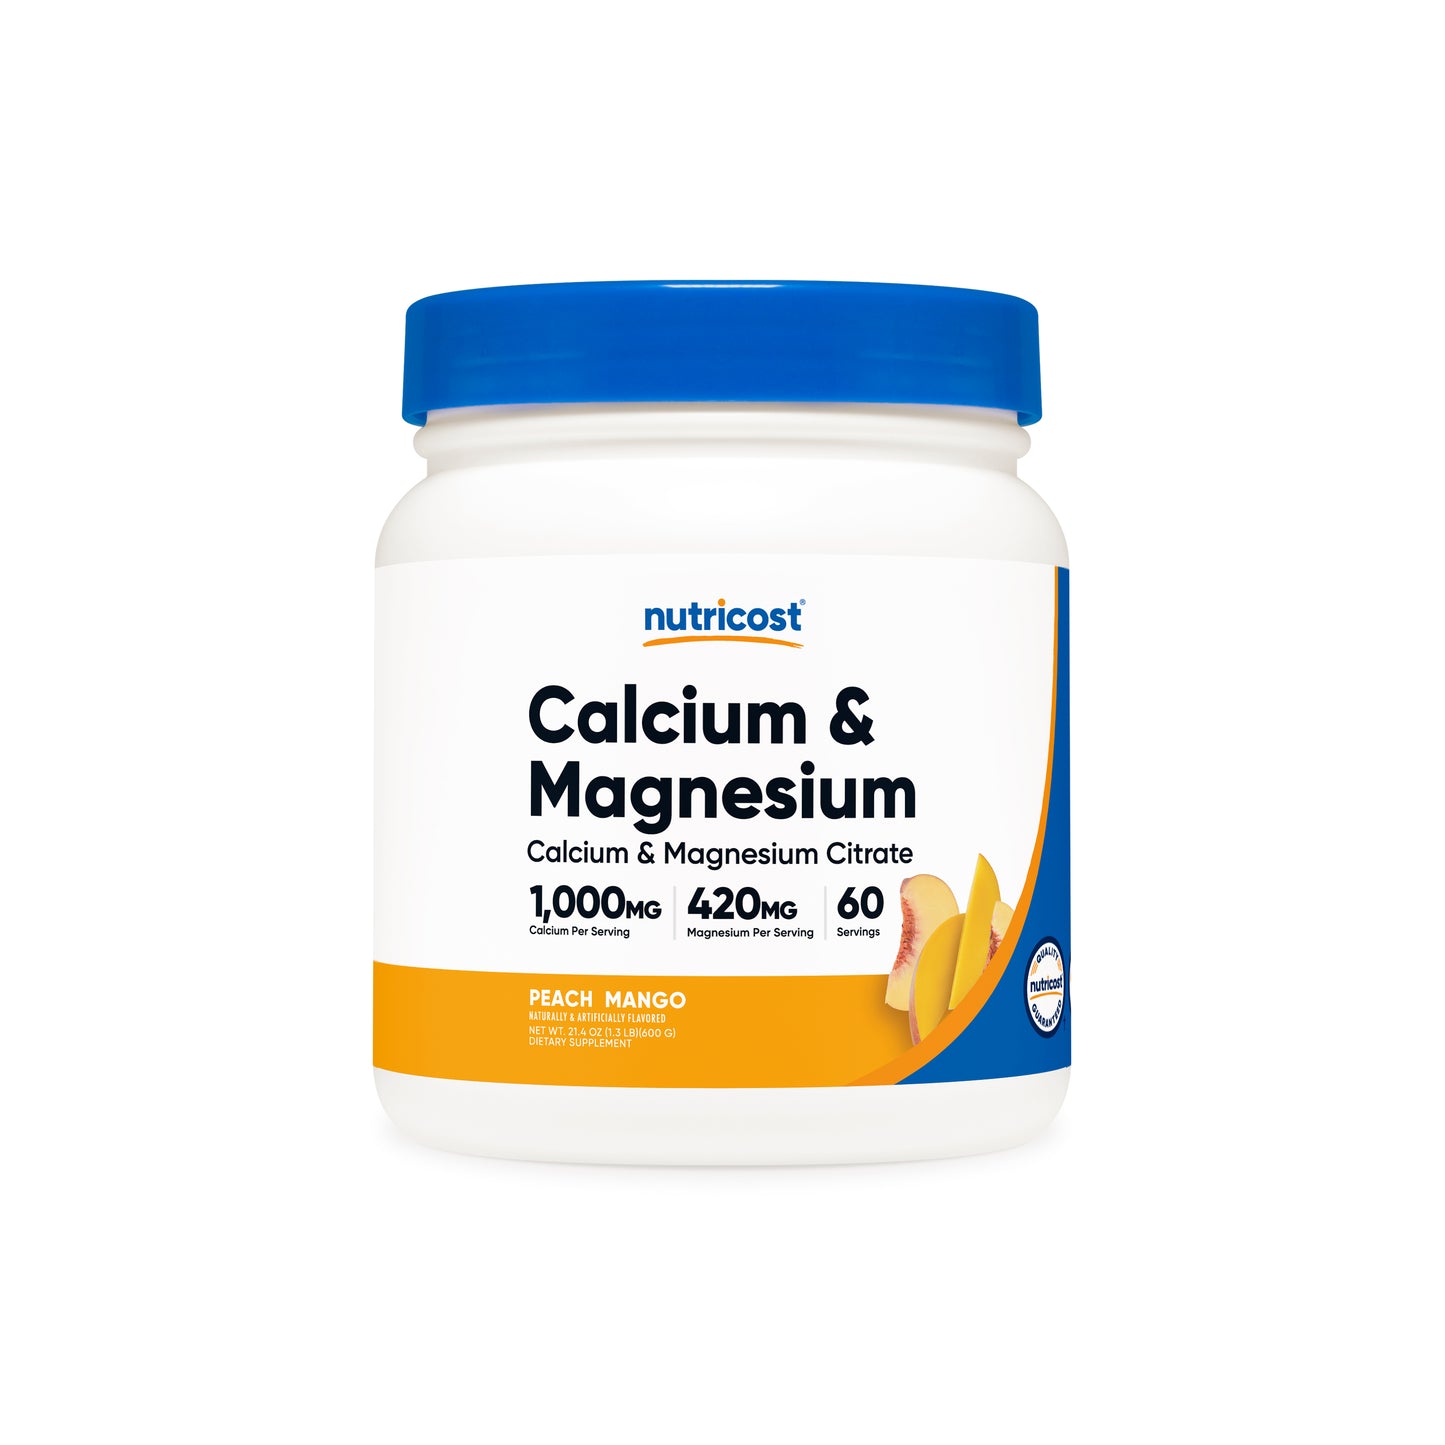 Nutricost Calcium & Magnesium Citrate